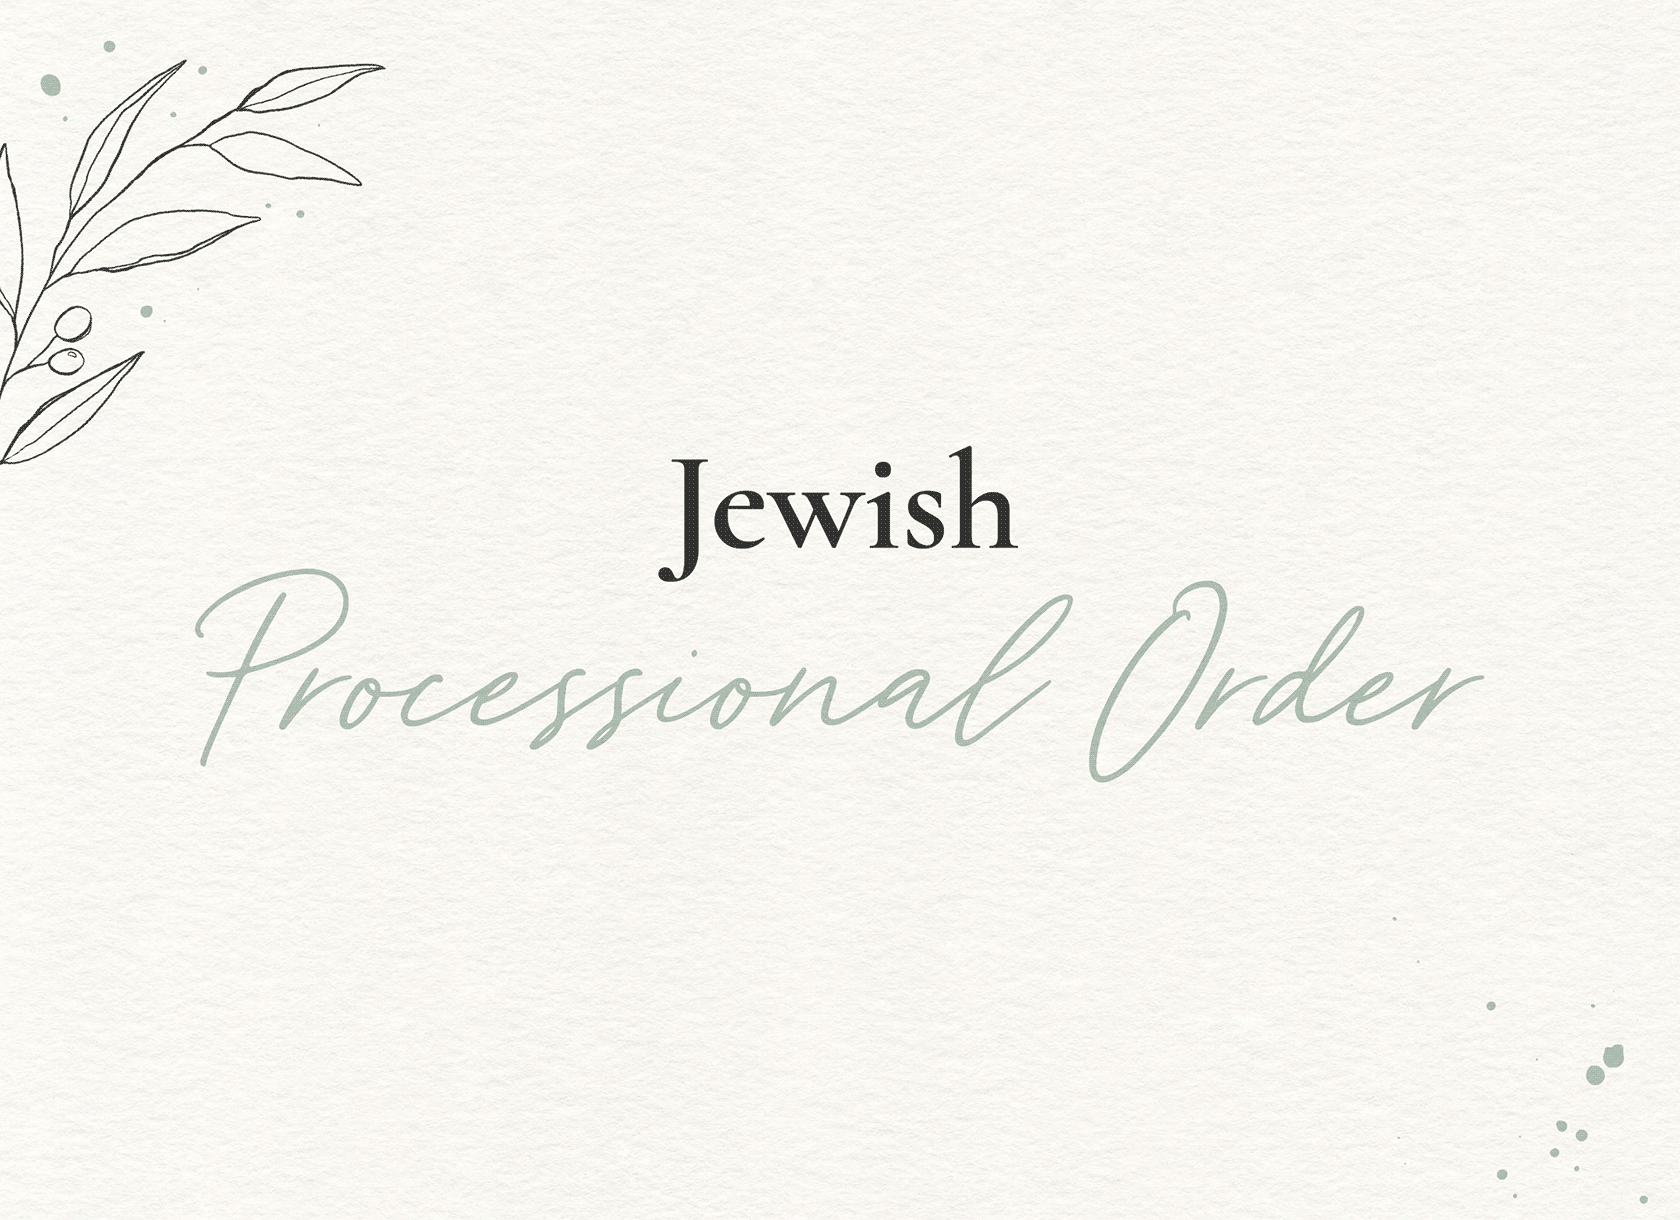 Jewish Processional Order